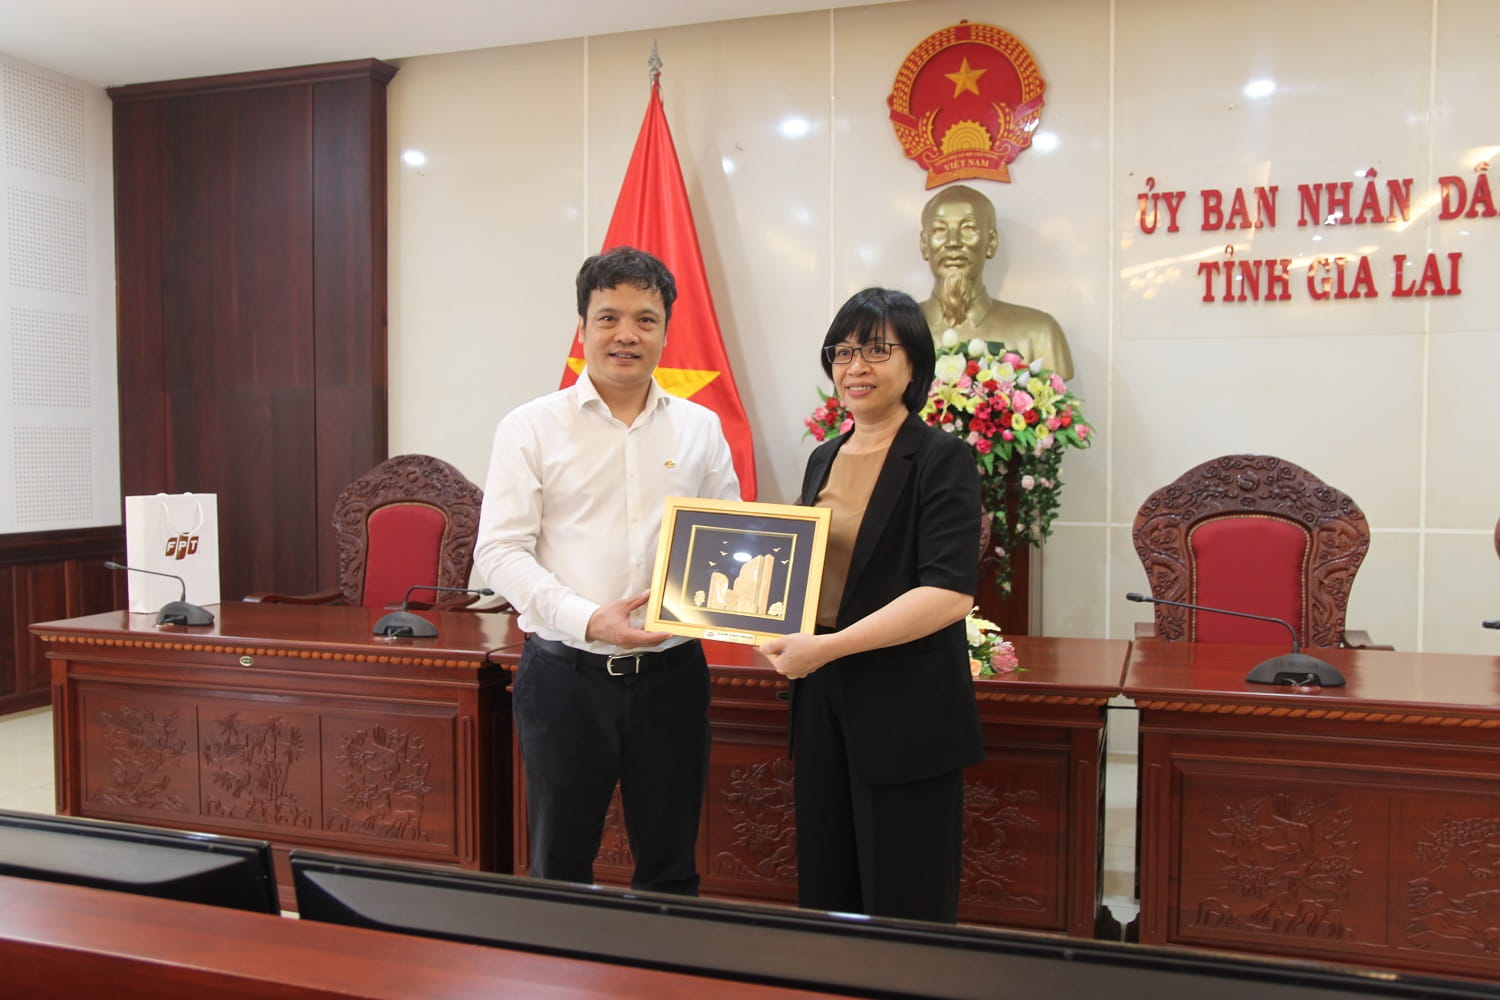 Tổng giám đốc FPT tặng quà Phó Chủ tịch UBND tỉnh Gia Lai.